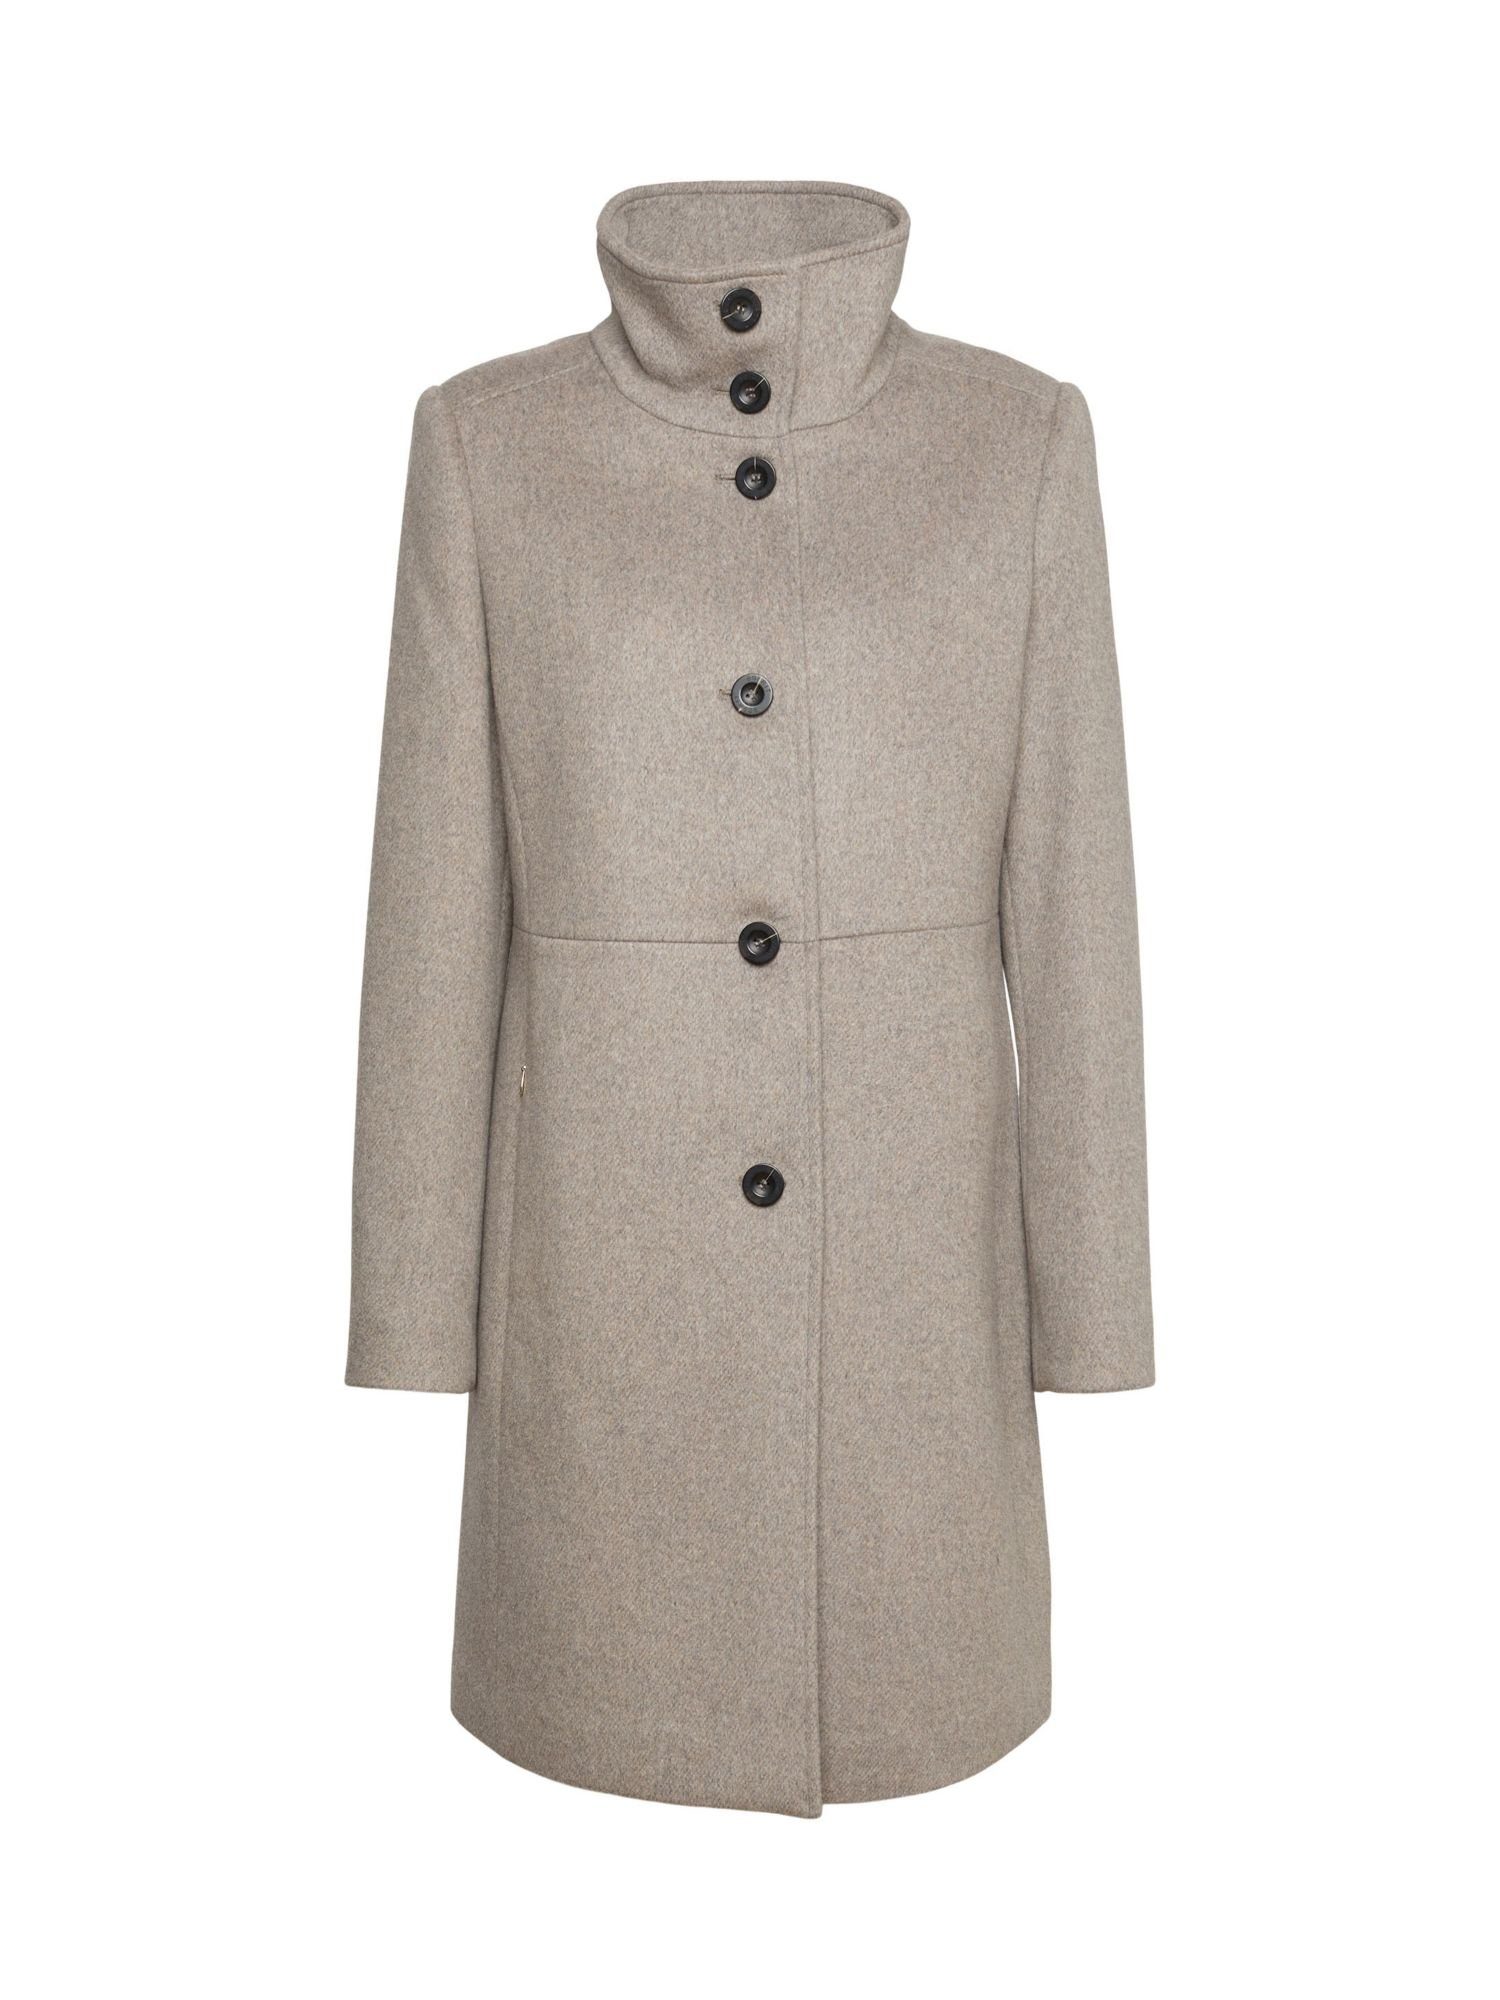 Esprit Collection Wollmantel Mantel aus weich angerauter Wolle | Jacken